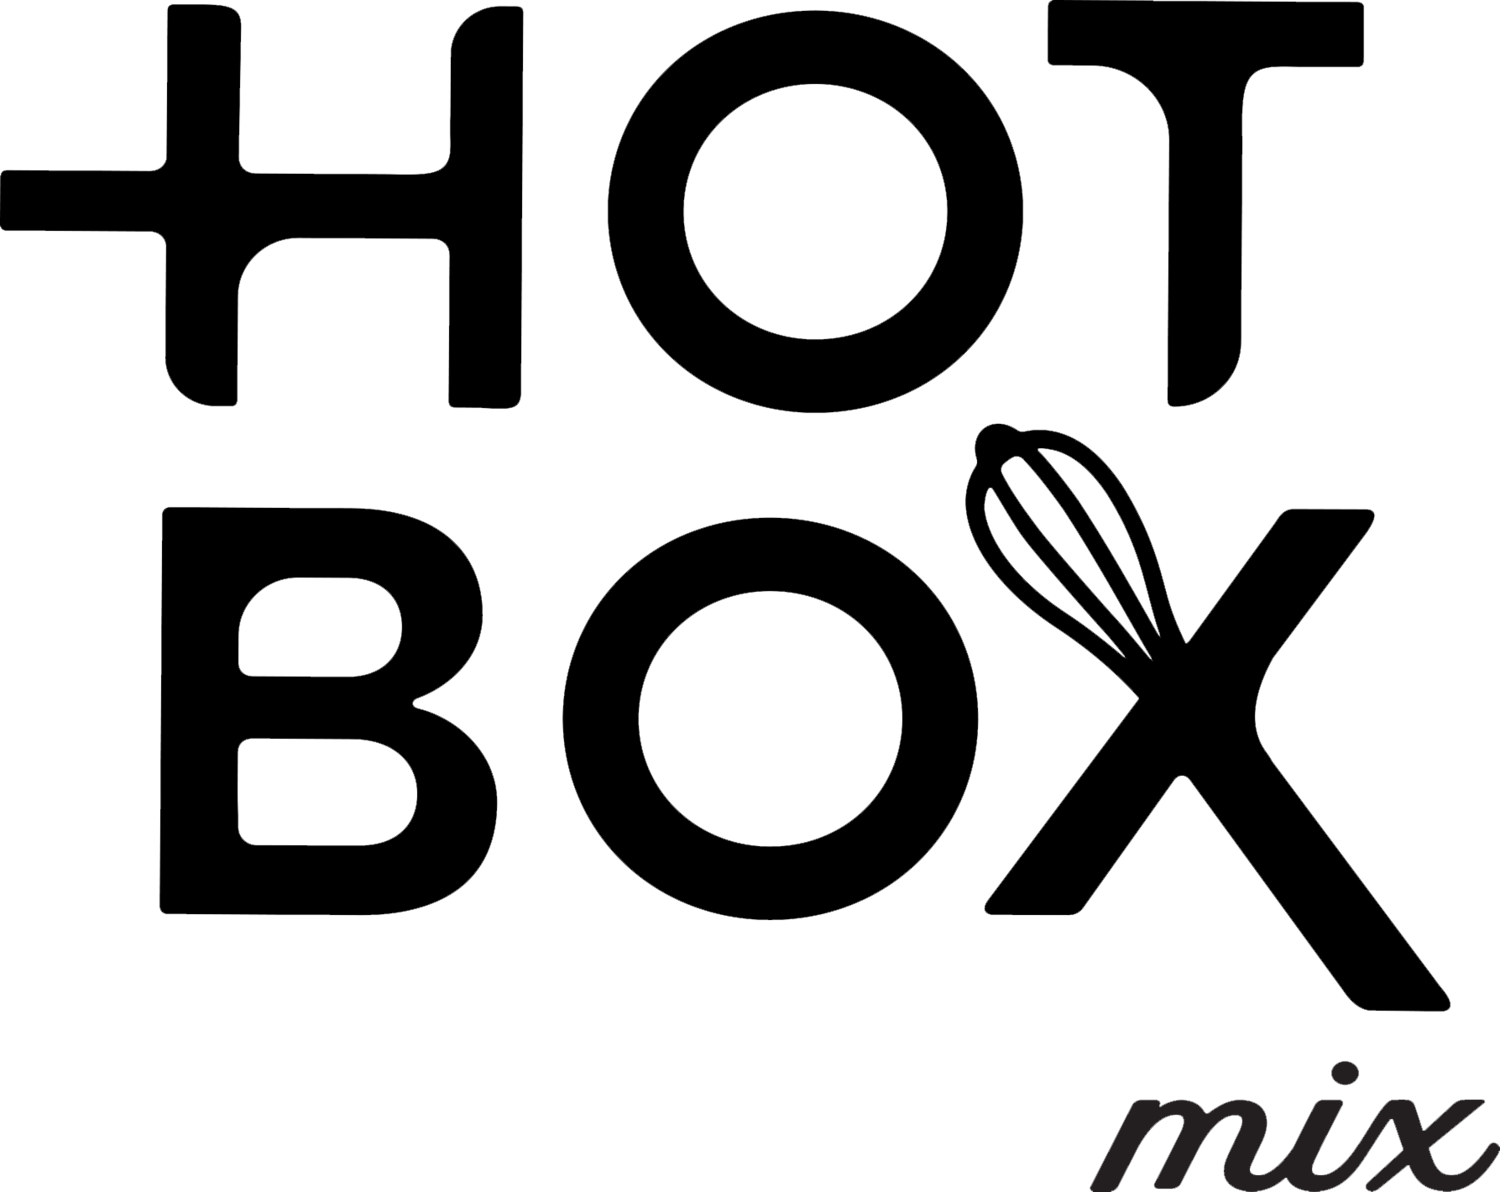 Hot Box Mix